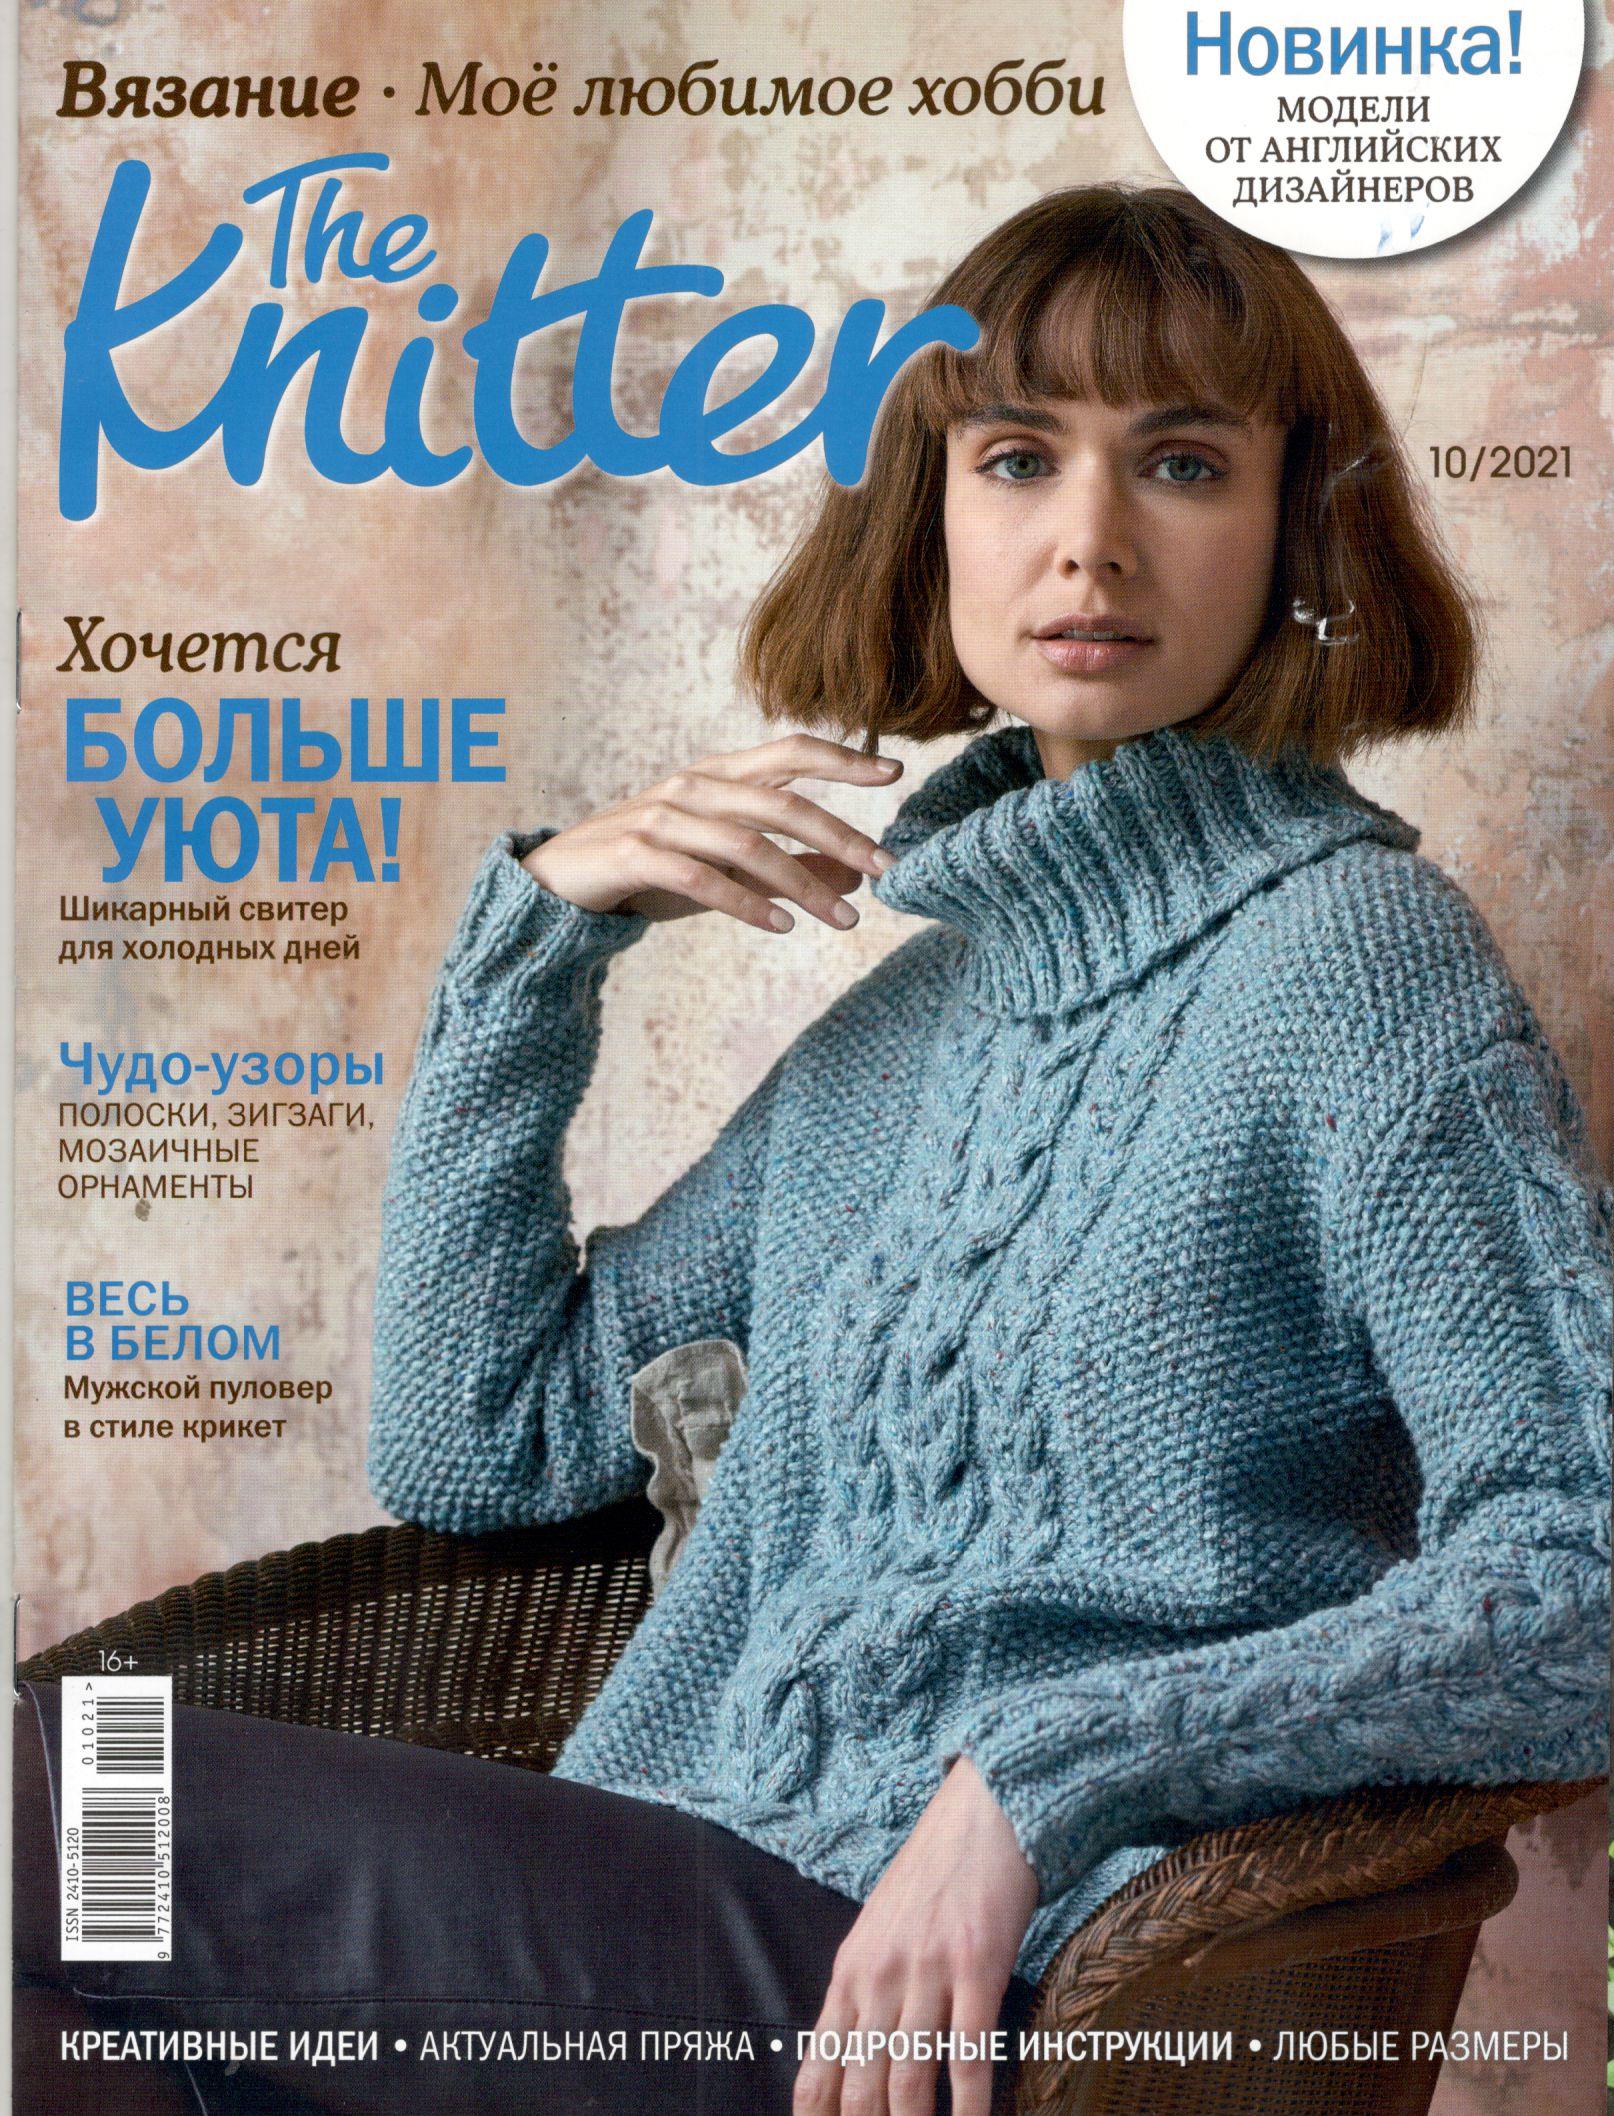 The Knitter №10 2021 - 110 руб